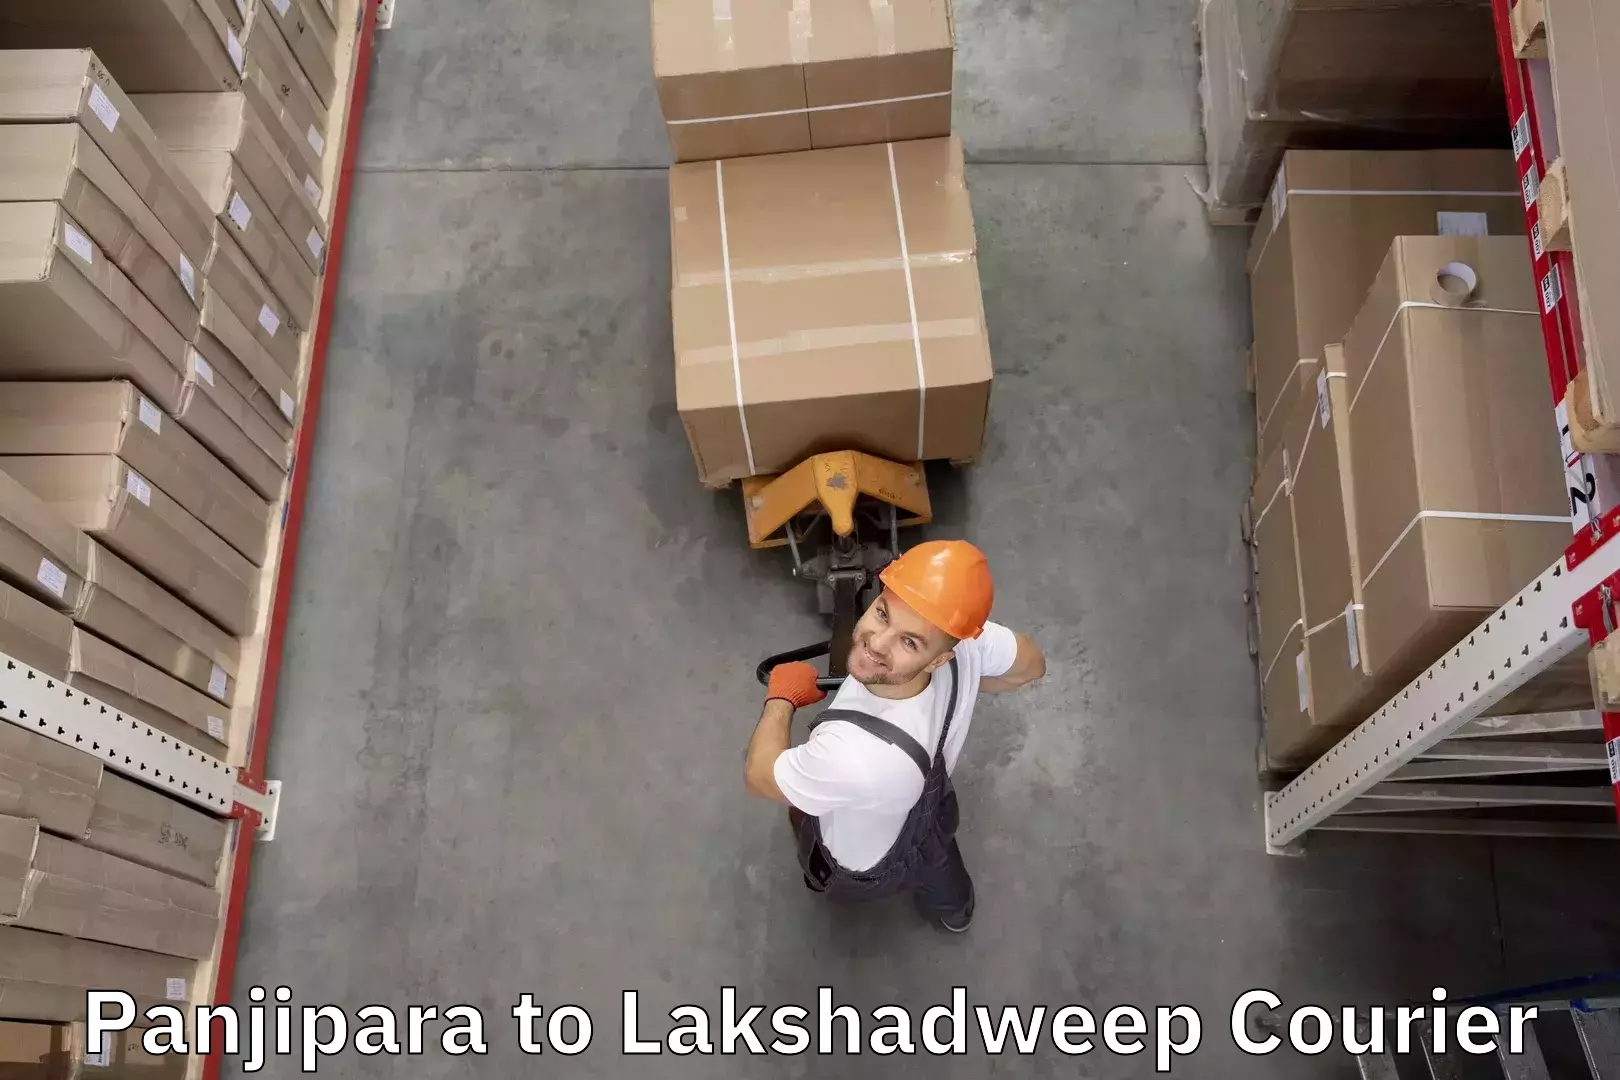 Luggage transport service Panjipara to Lakshadweep